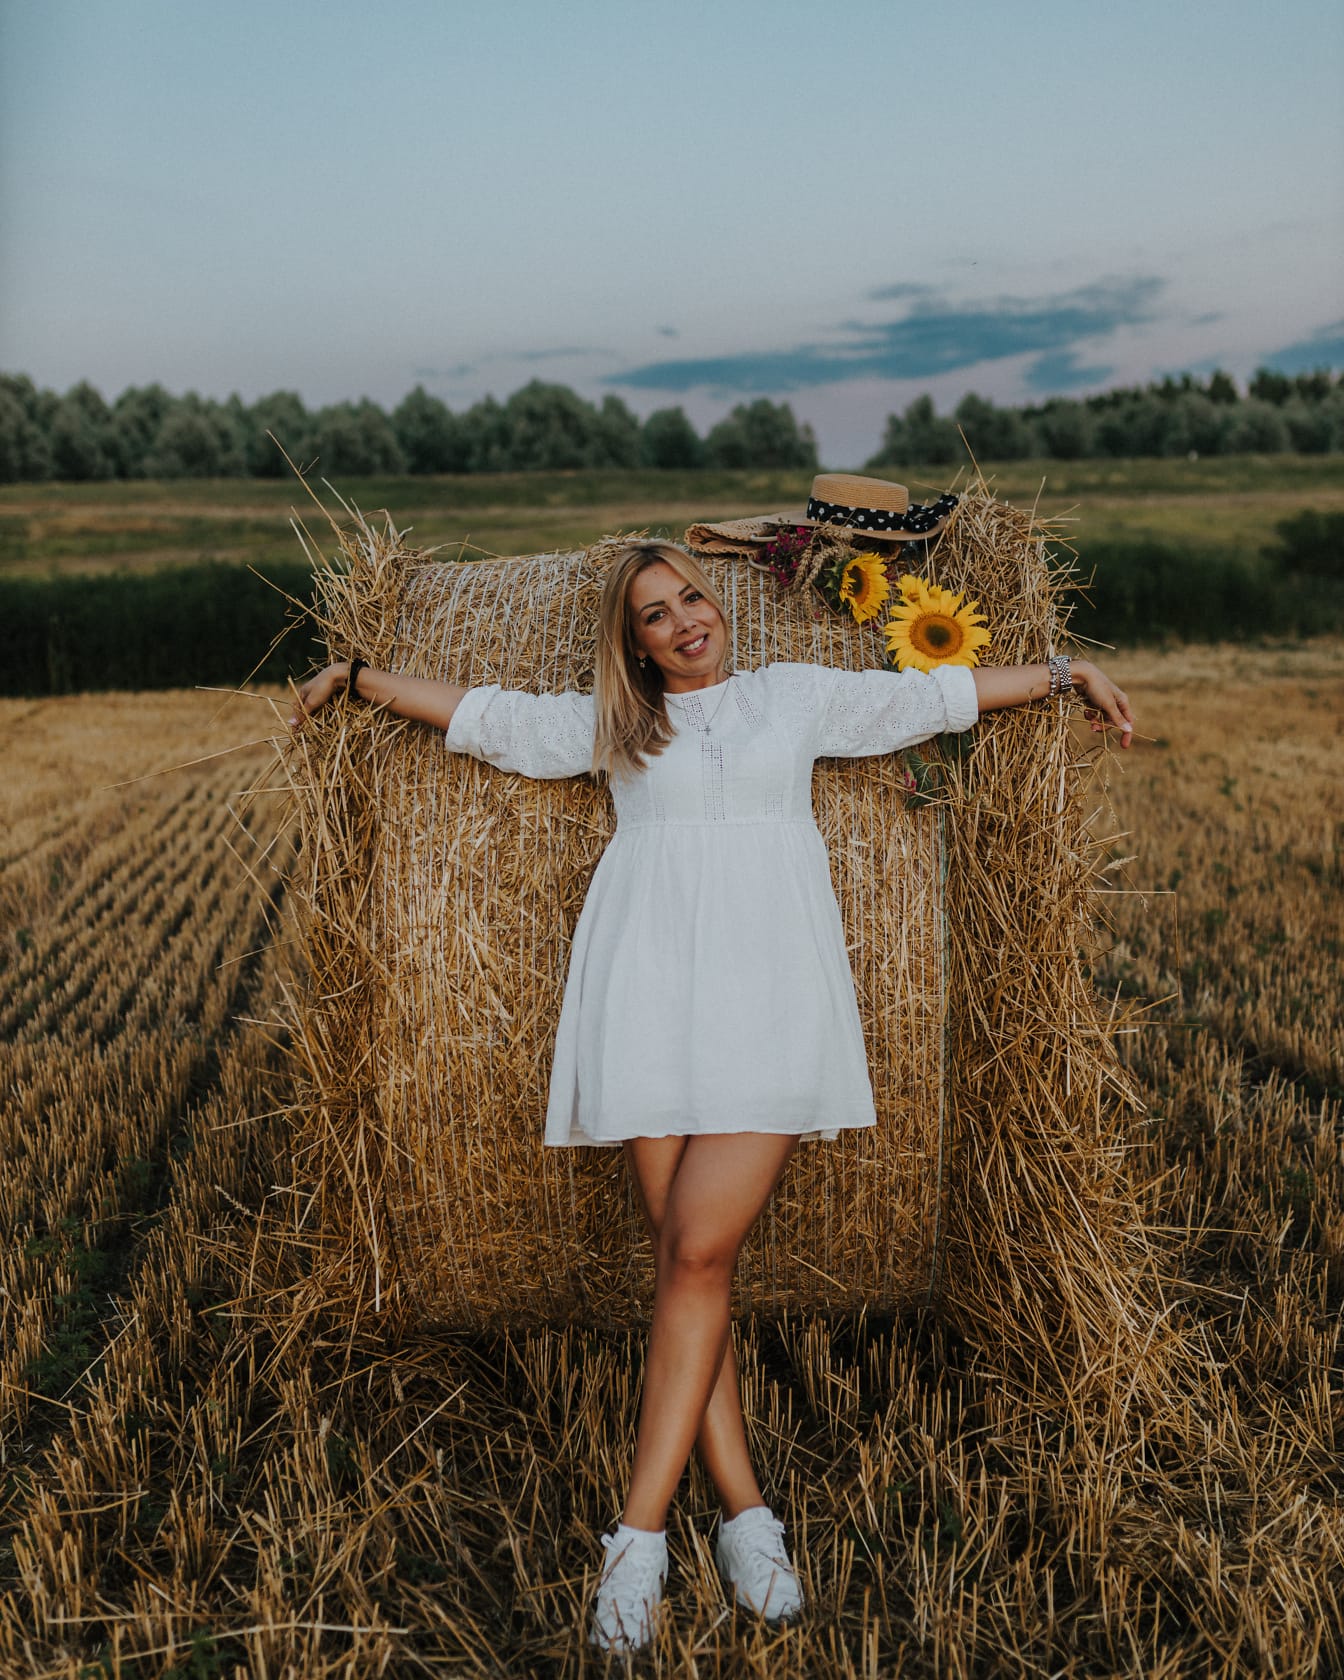 Người phụ nữ trẻ xinh đẹp tuyệt vời tạo dáng trong một chiếc váy trắng theo phong cách đồng quê dựa vào đống cỏ khô trên cánh đồng cỏ khô